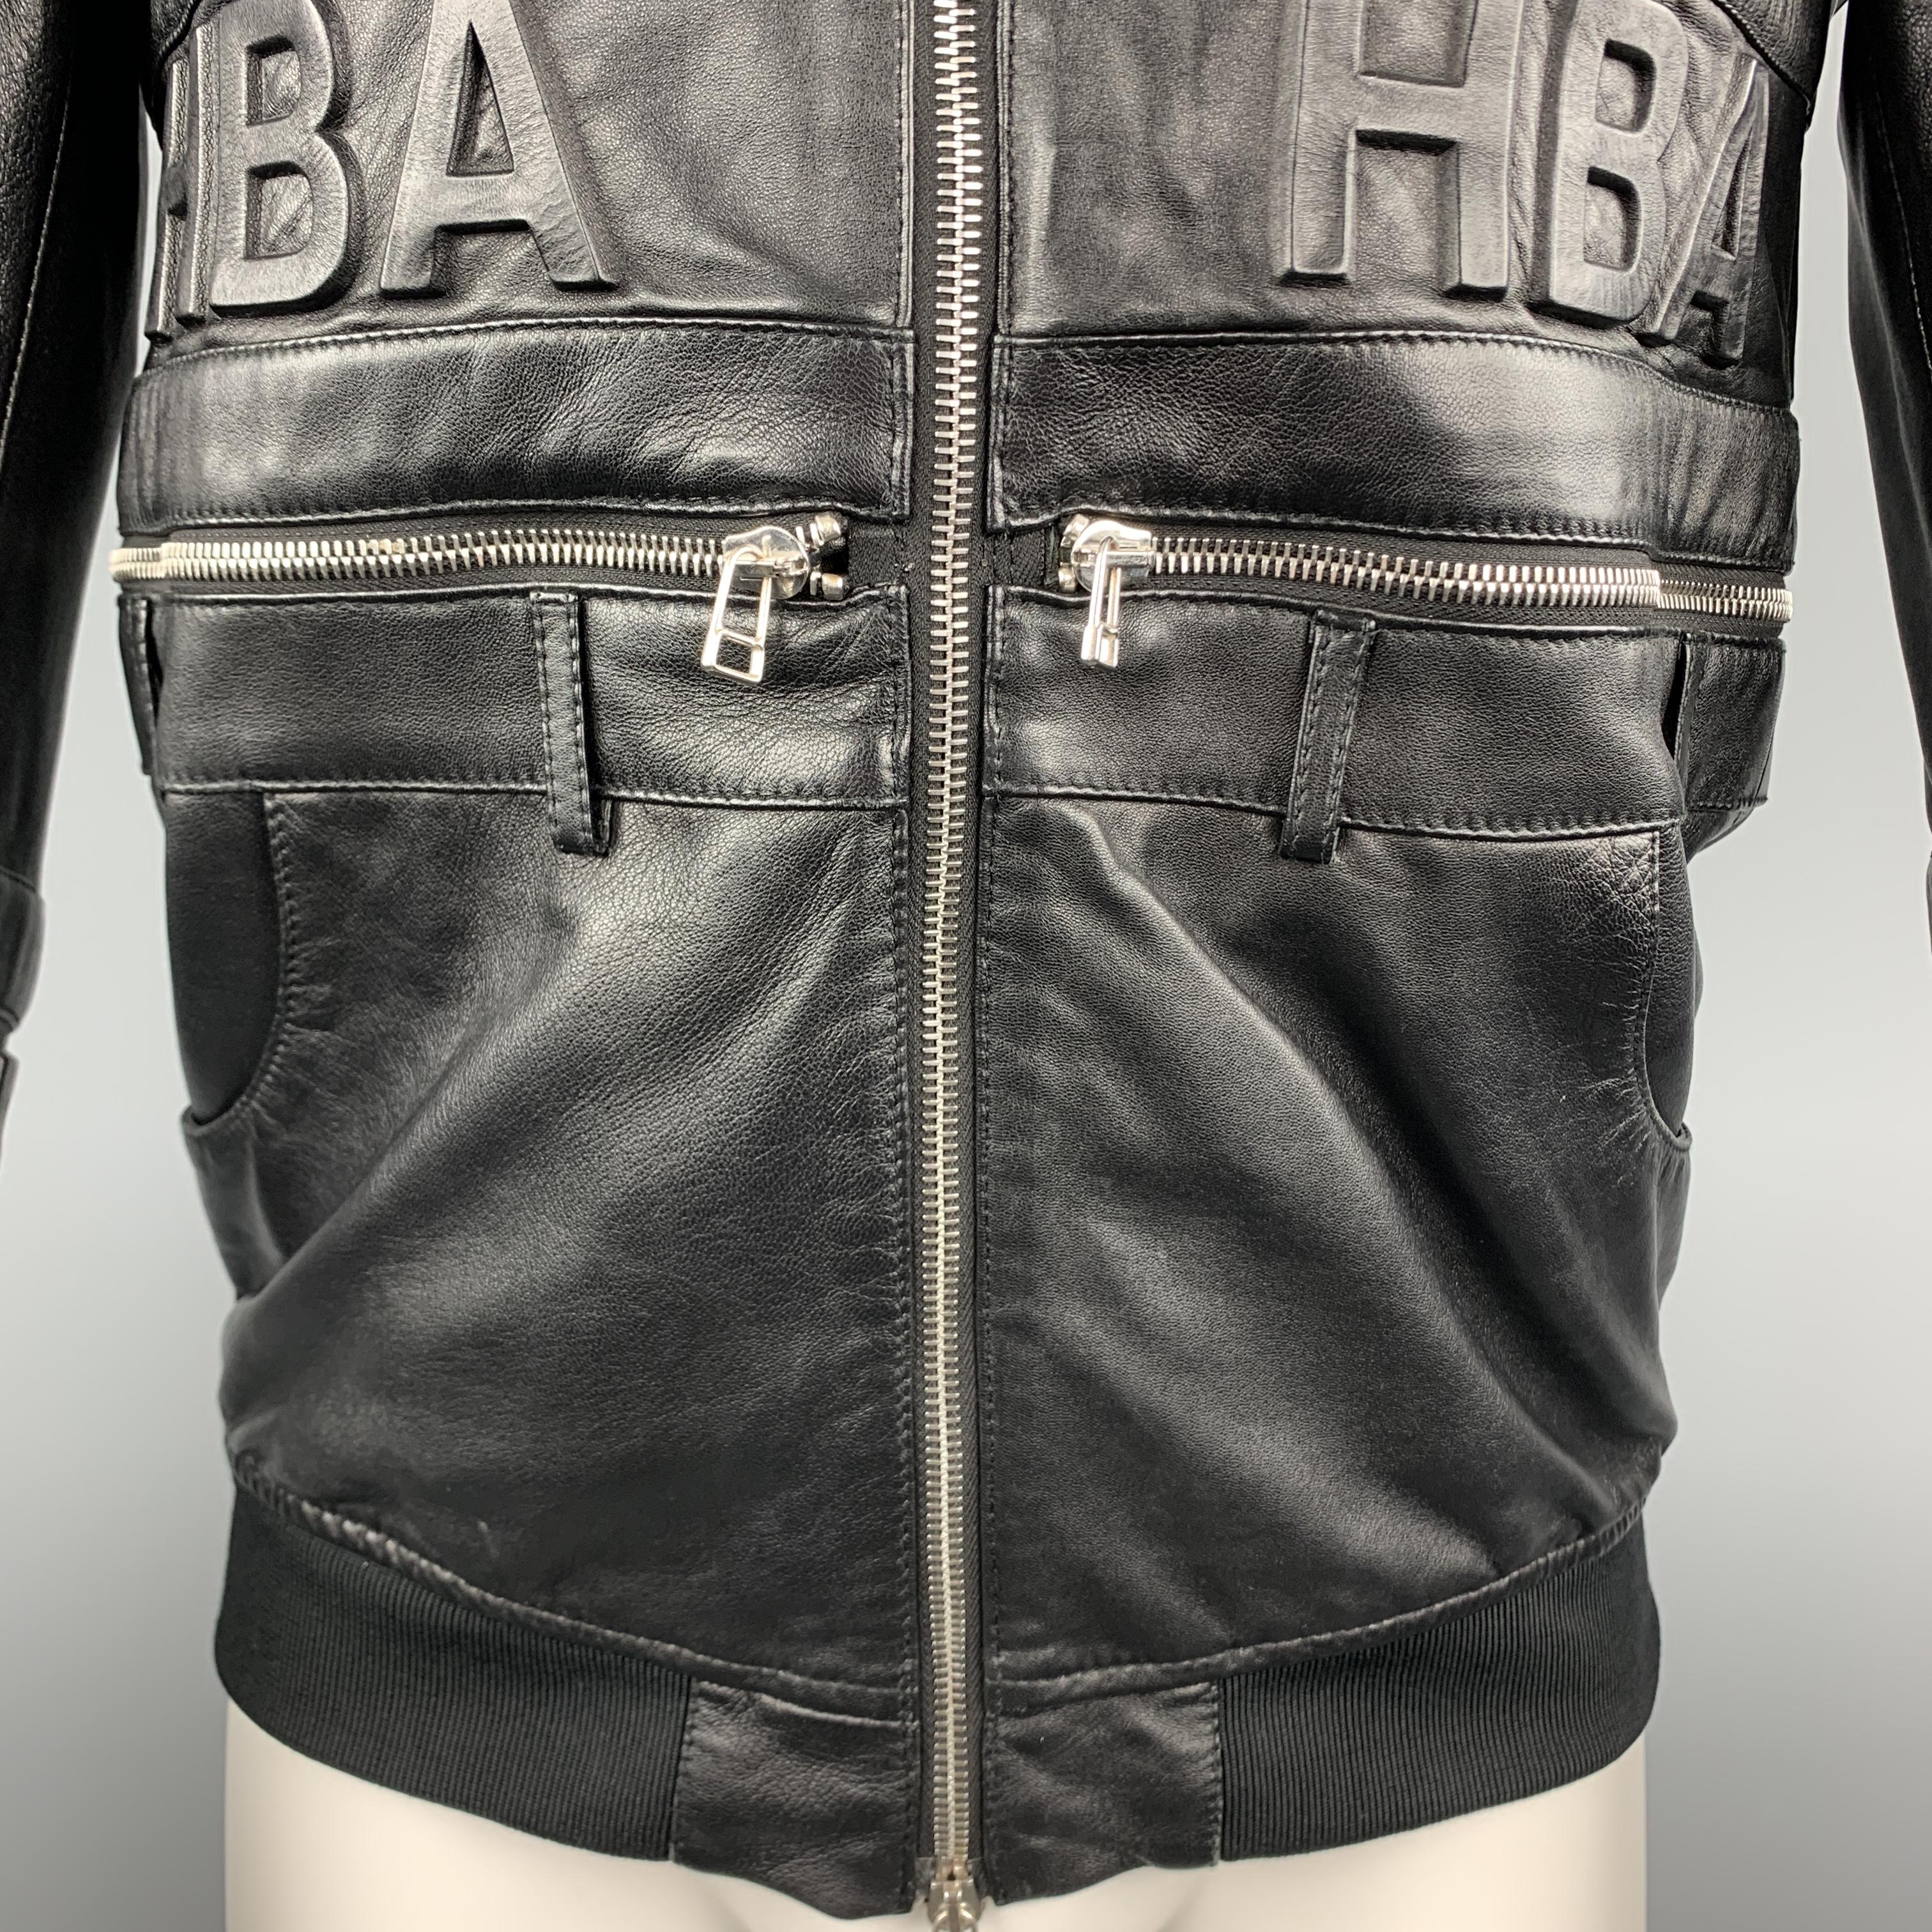 hba leather jacket